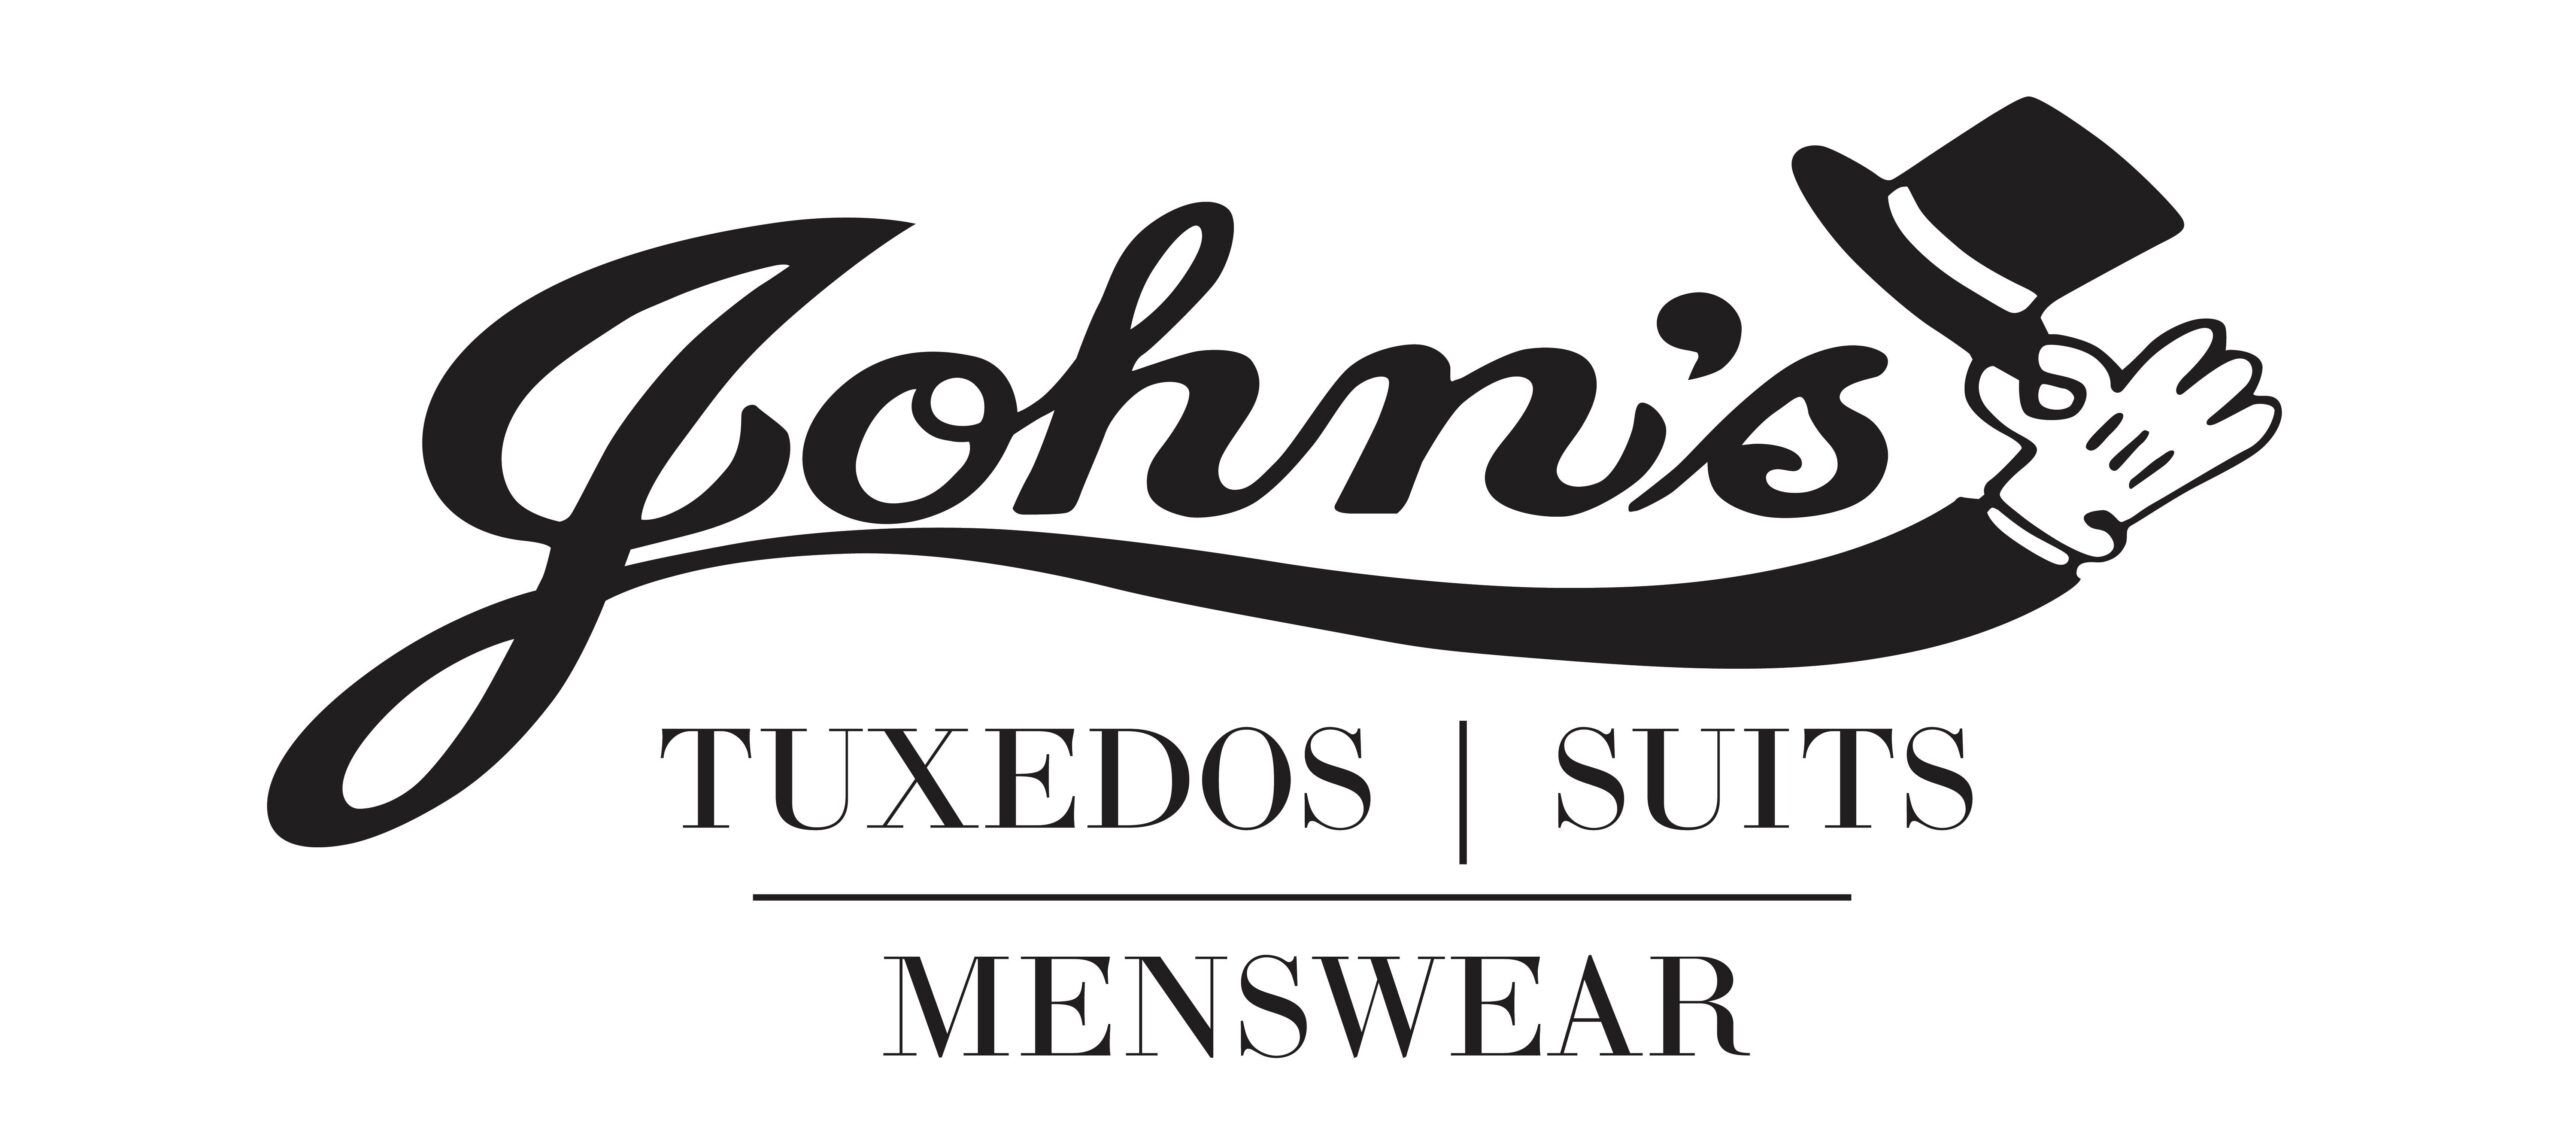 John’s Tuxedos